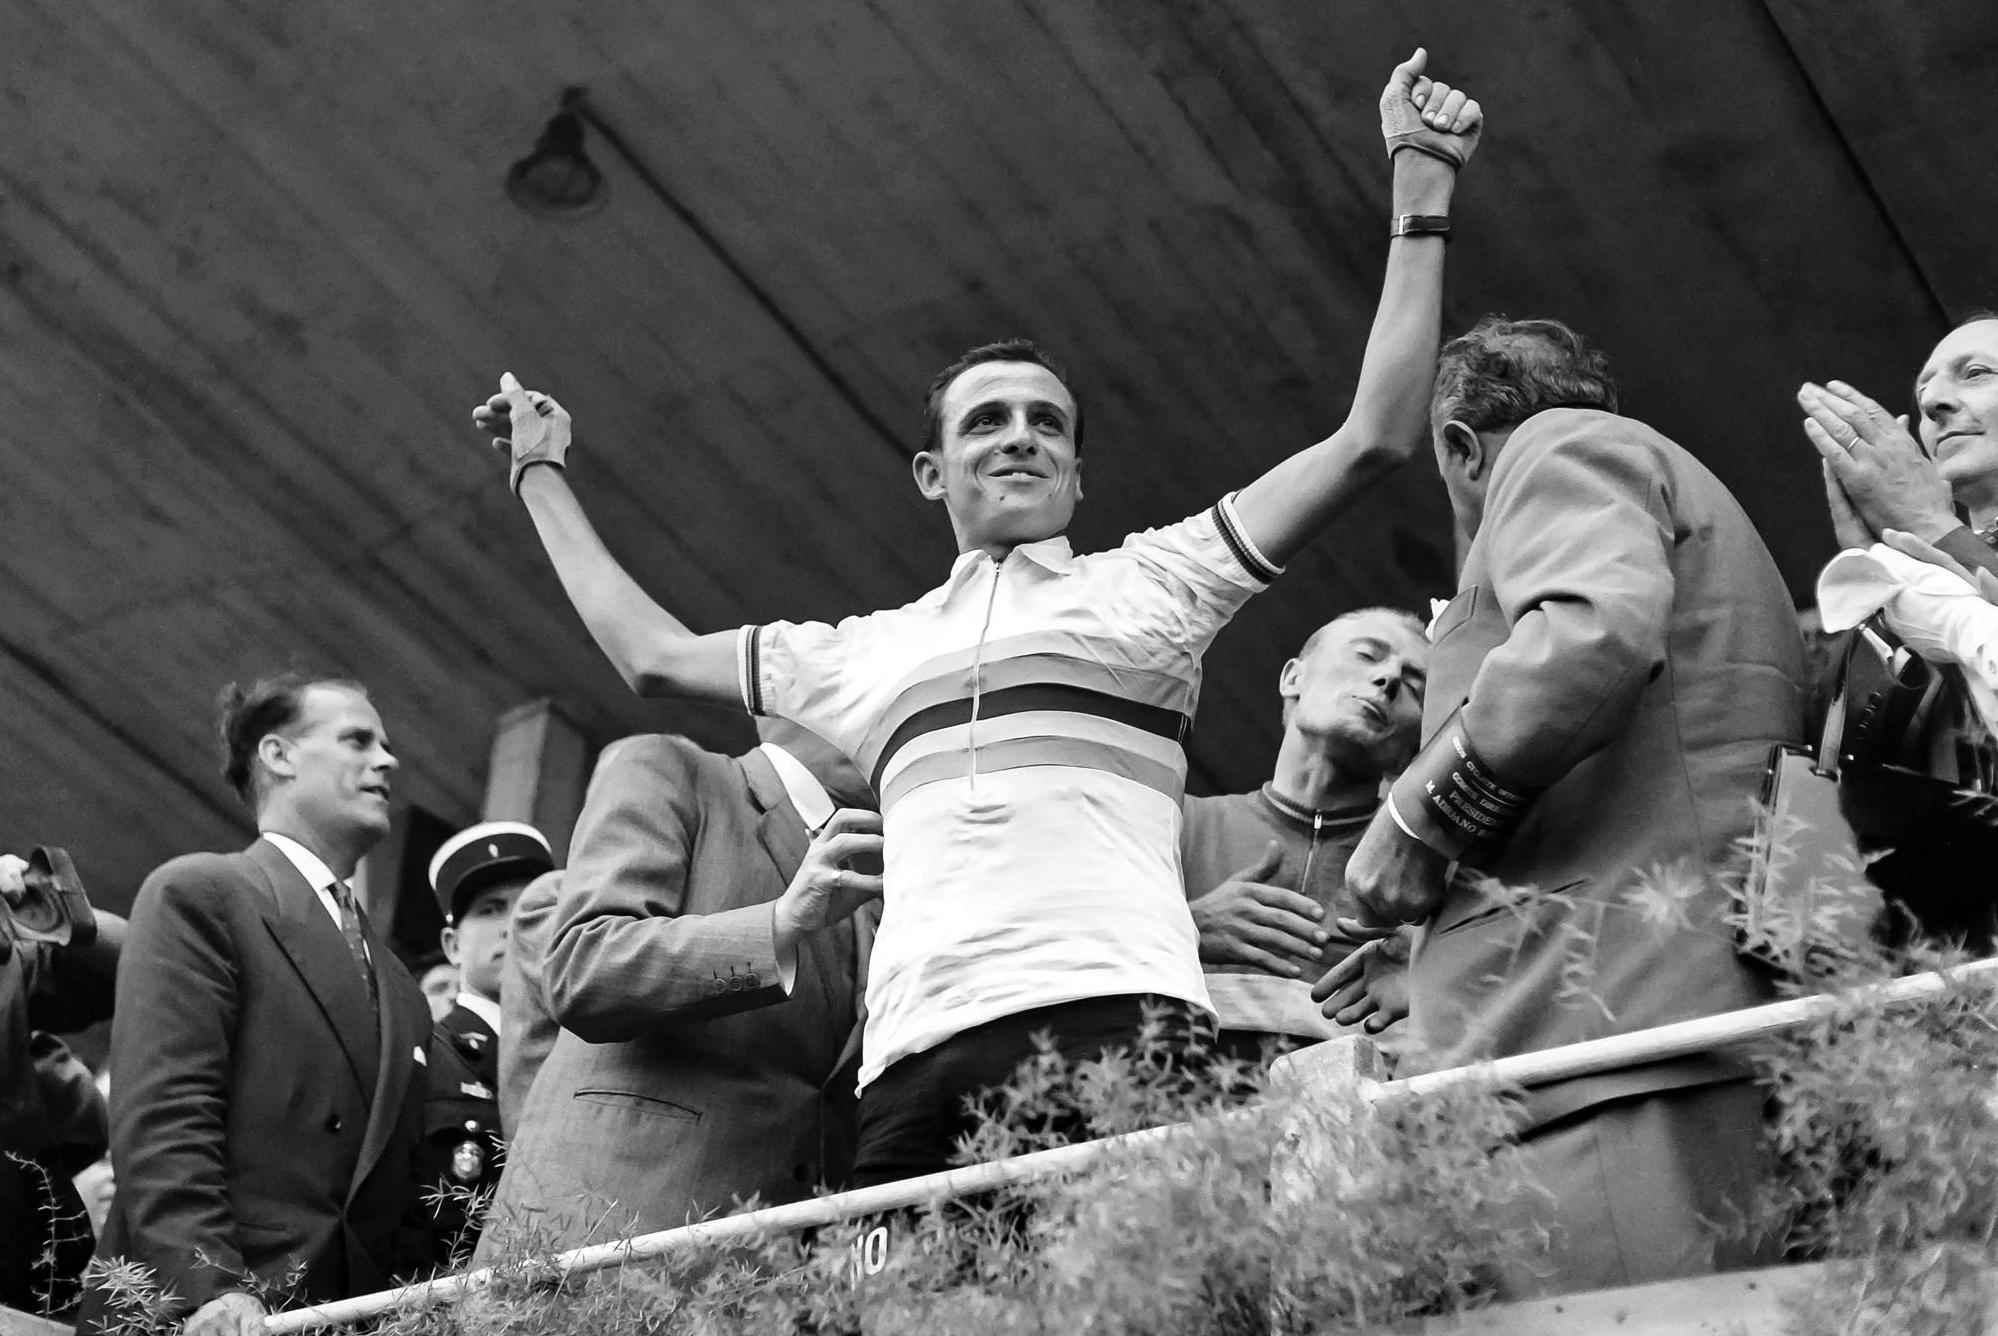 Morta la leggenda del ciclismo italiano Ercole Baldini: ex vincitore del Giro, campione del mondo e detentore del record mondiale dell’ora